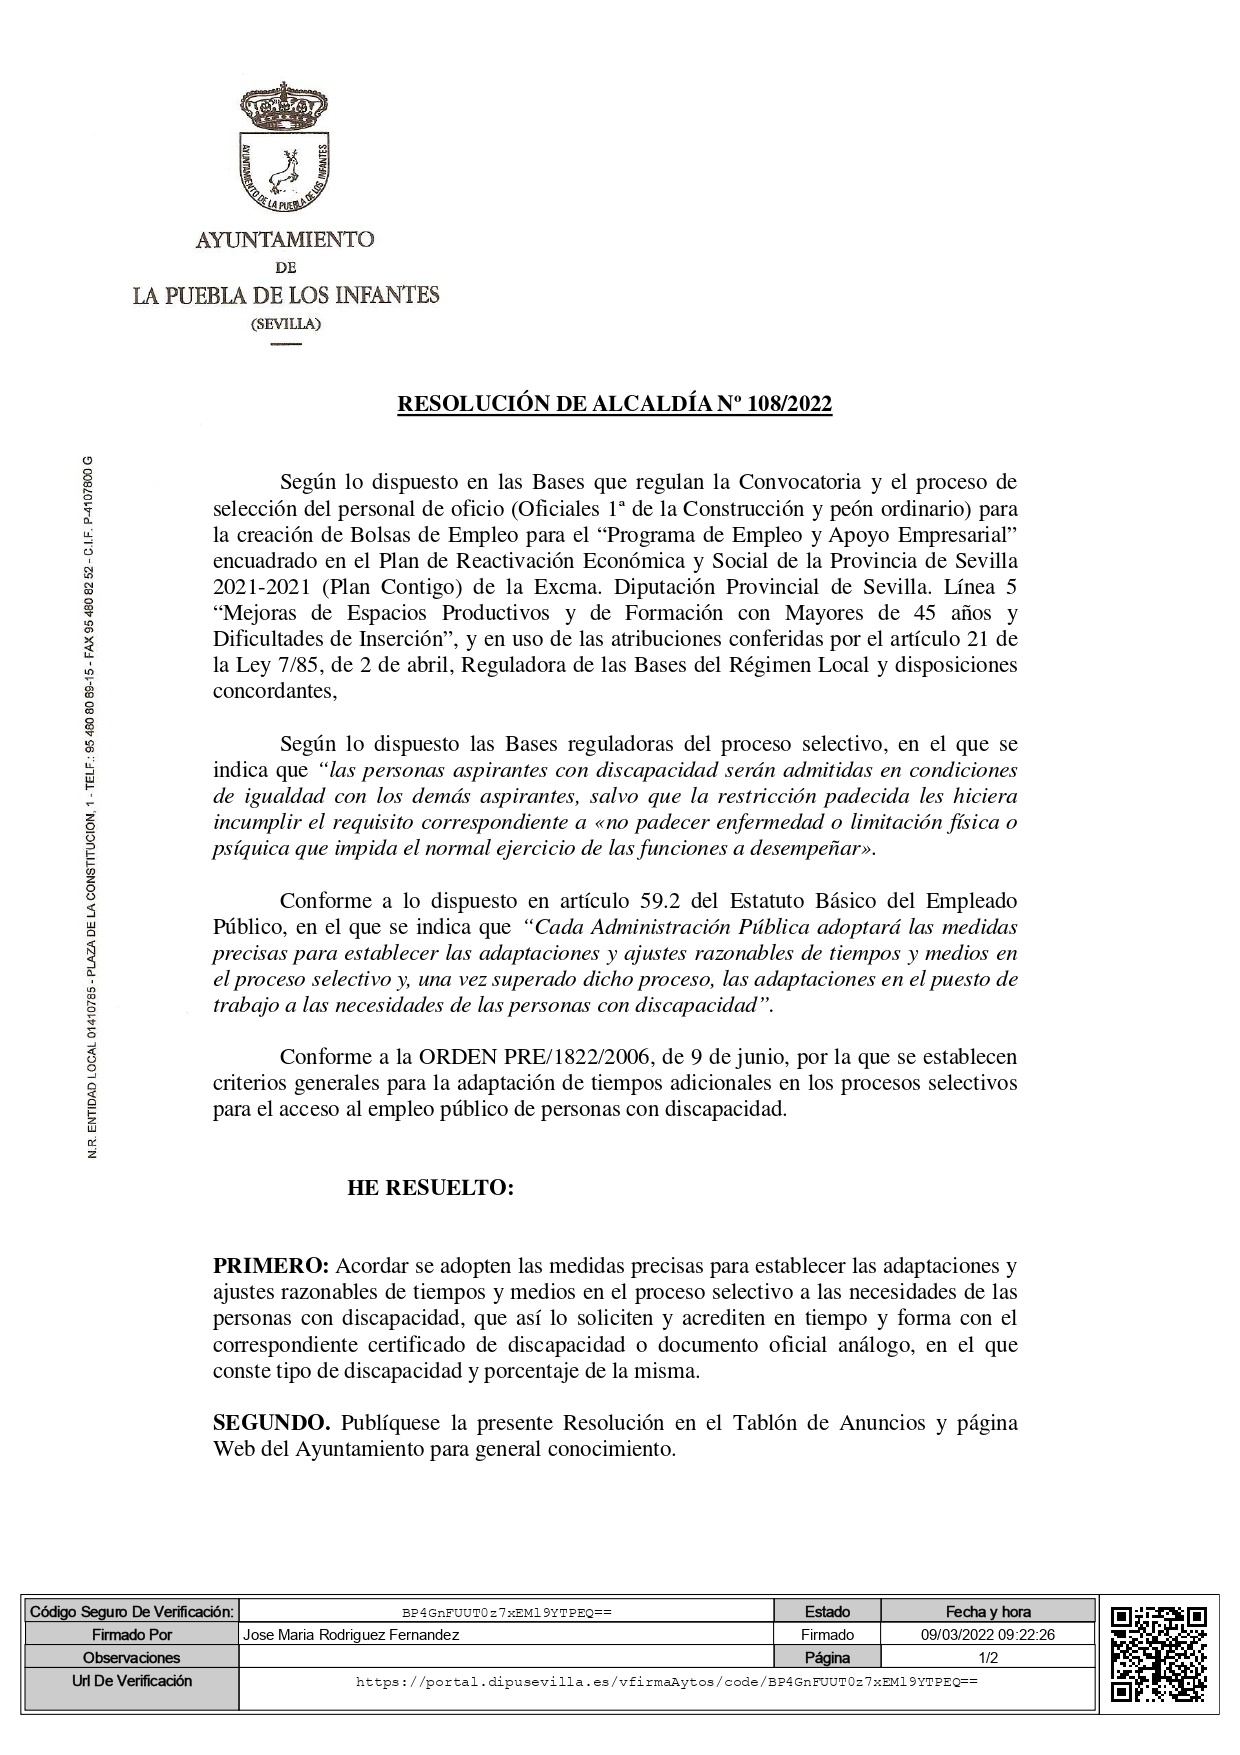 01 Resolución de Alcaldía 108-2022 F_page-0001